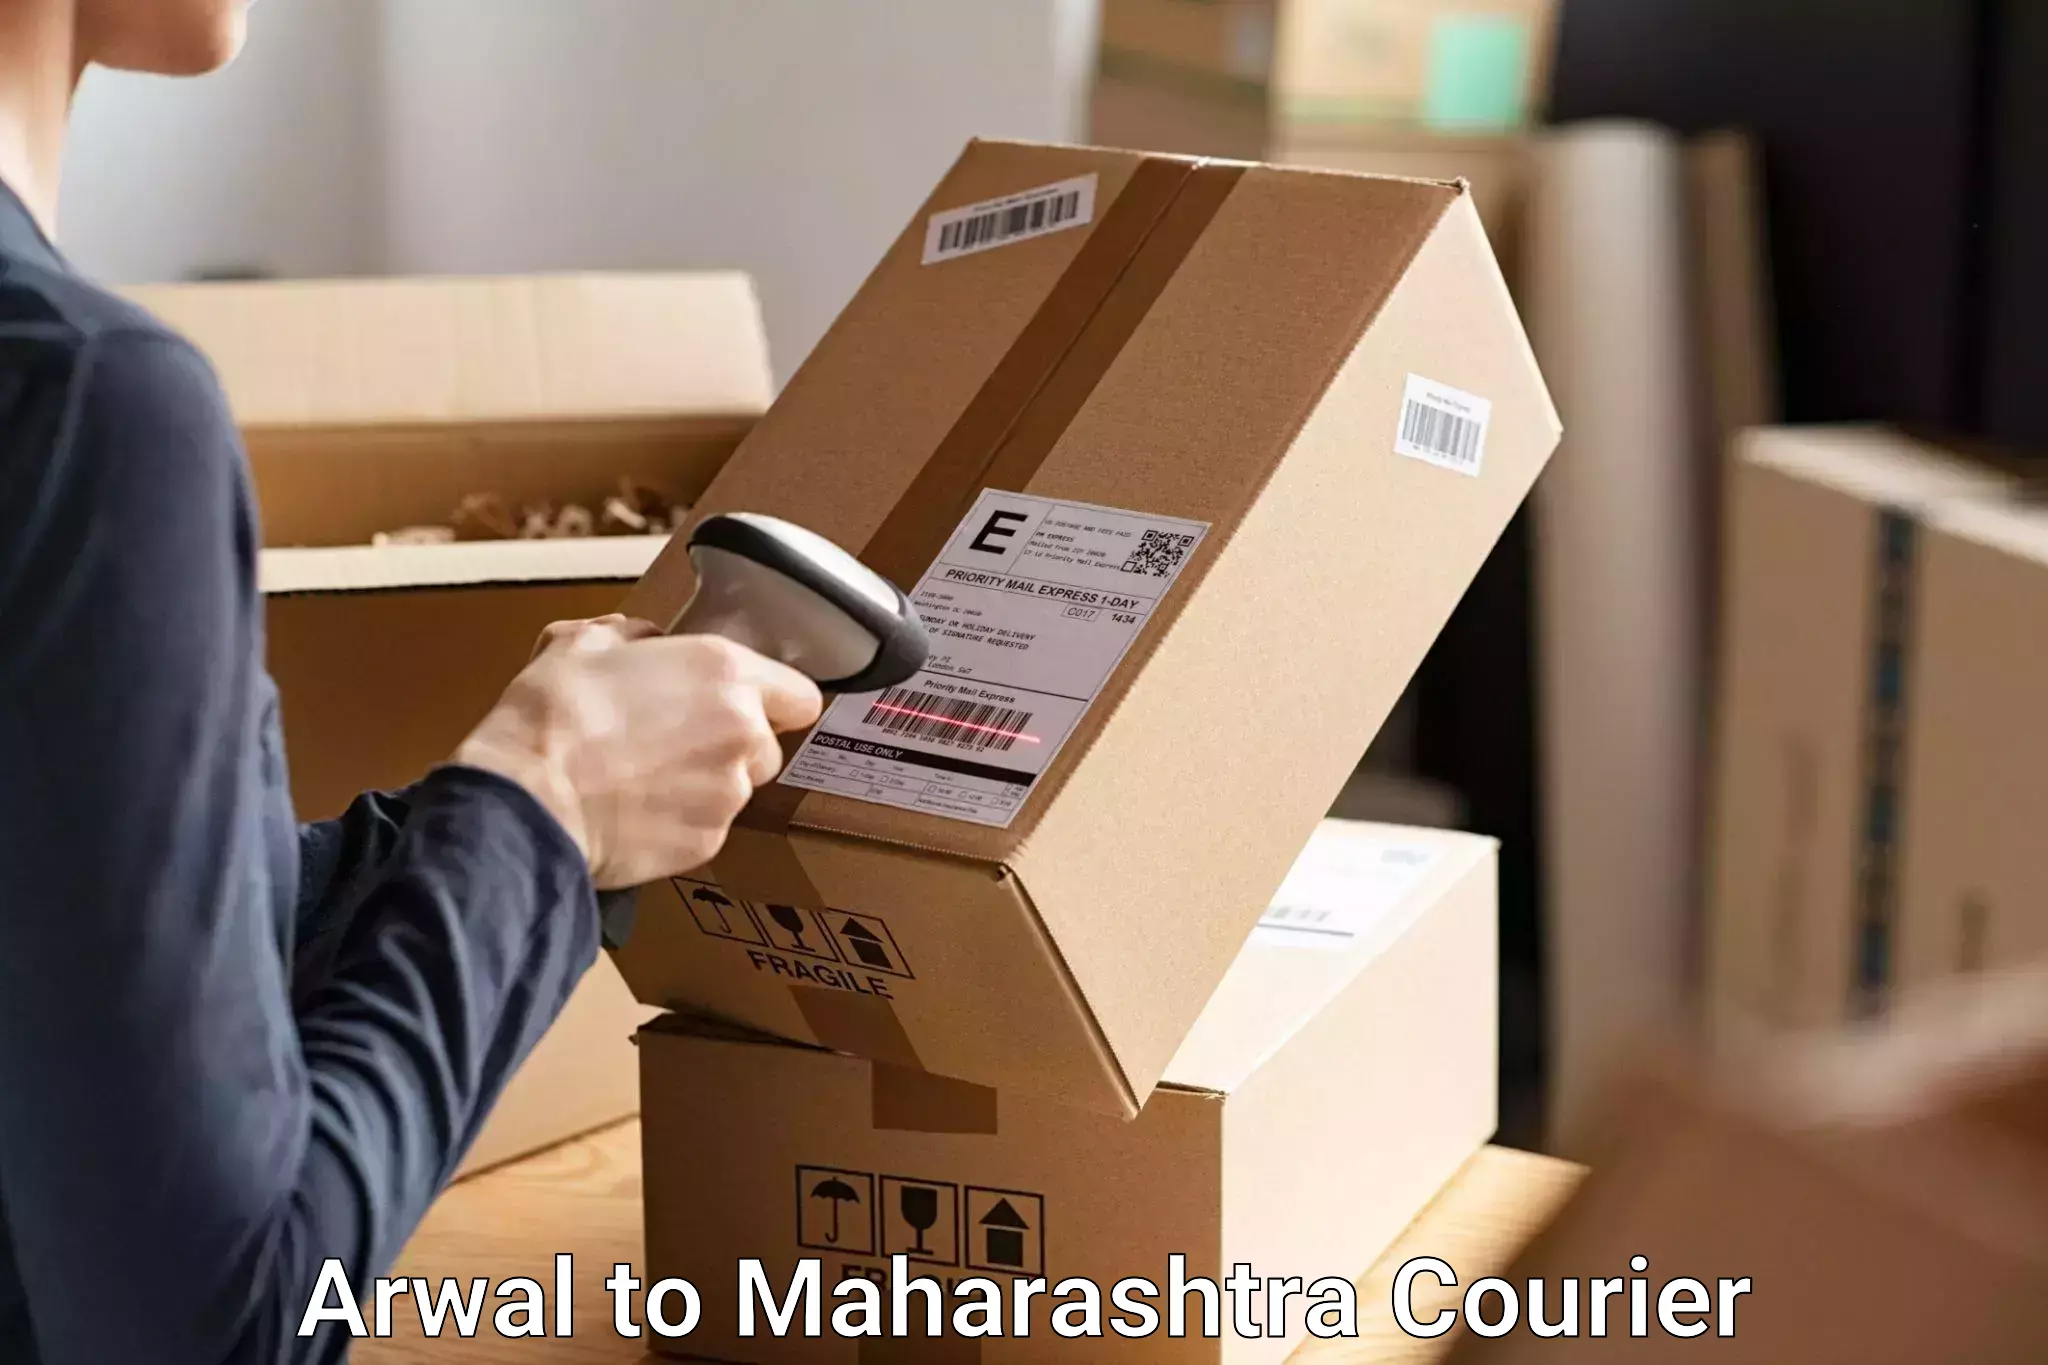 Baggage shipping experts Arwal to Mahabaleshwar